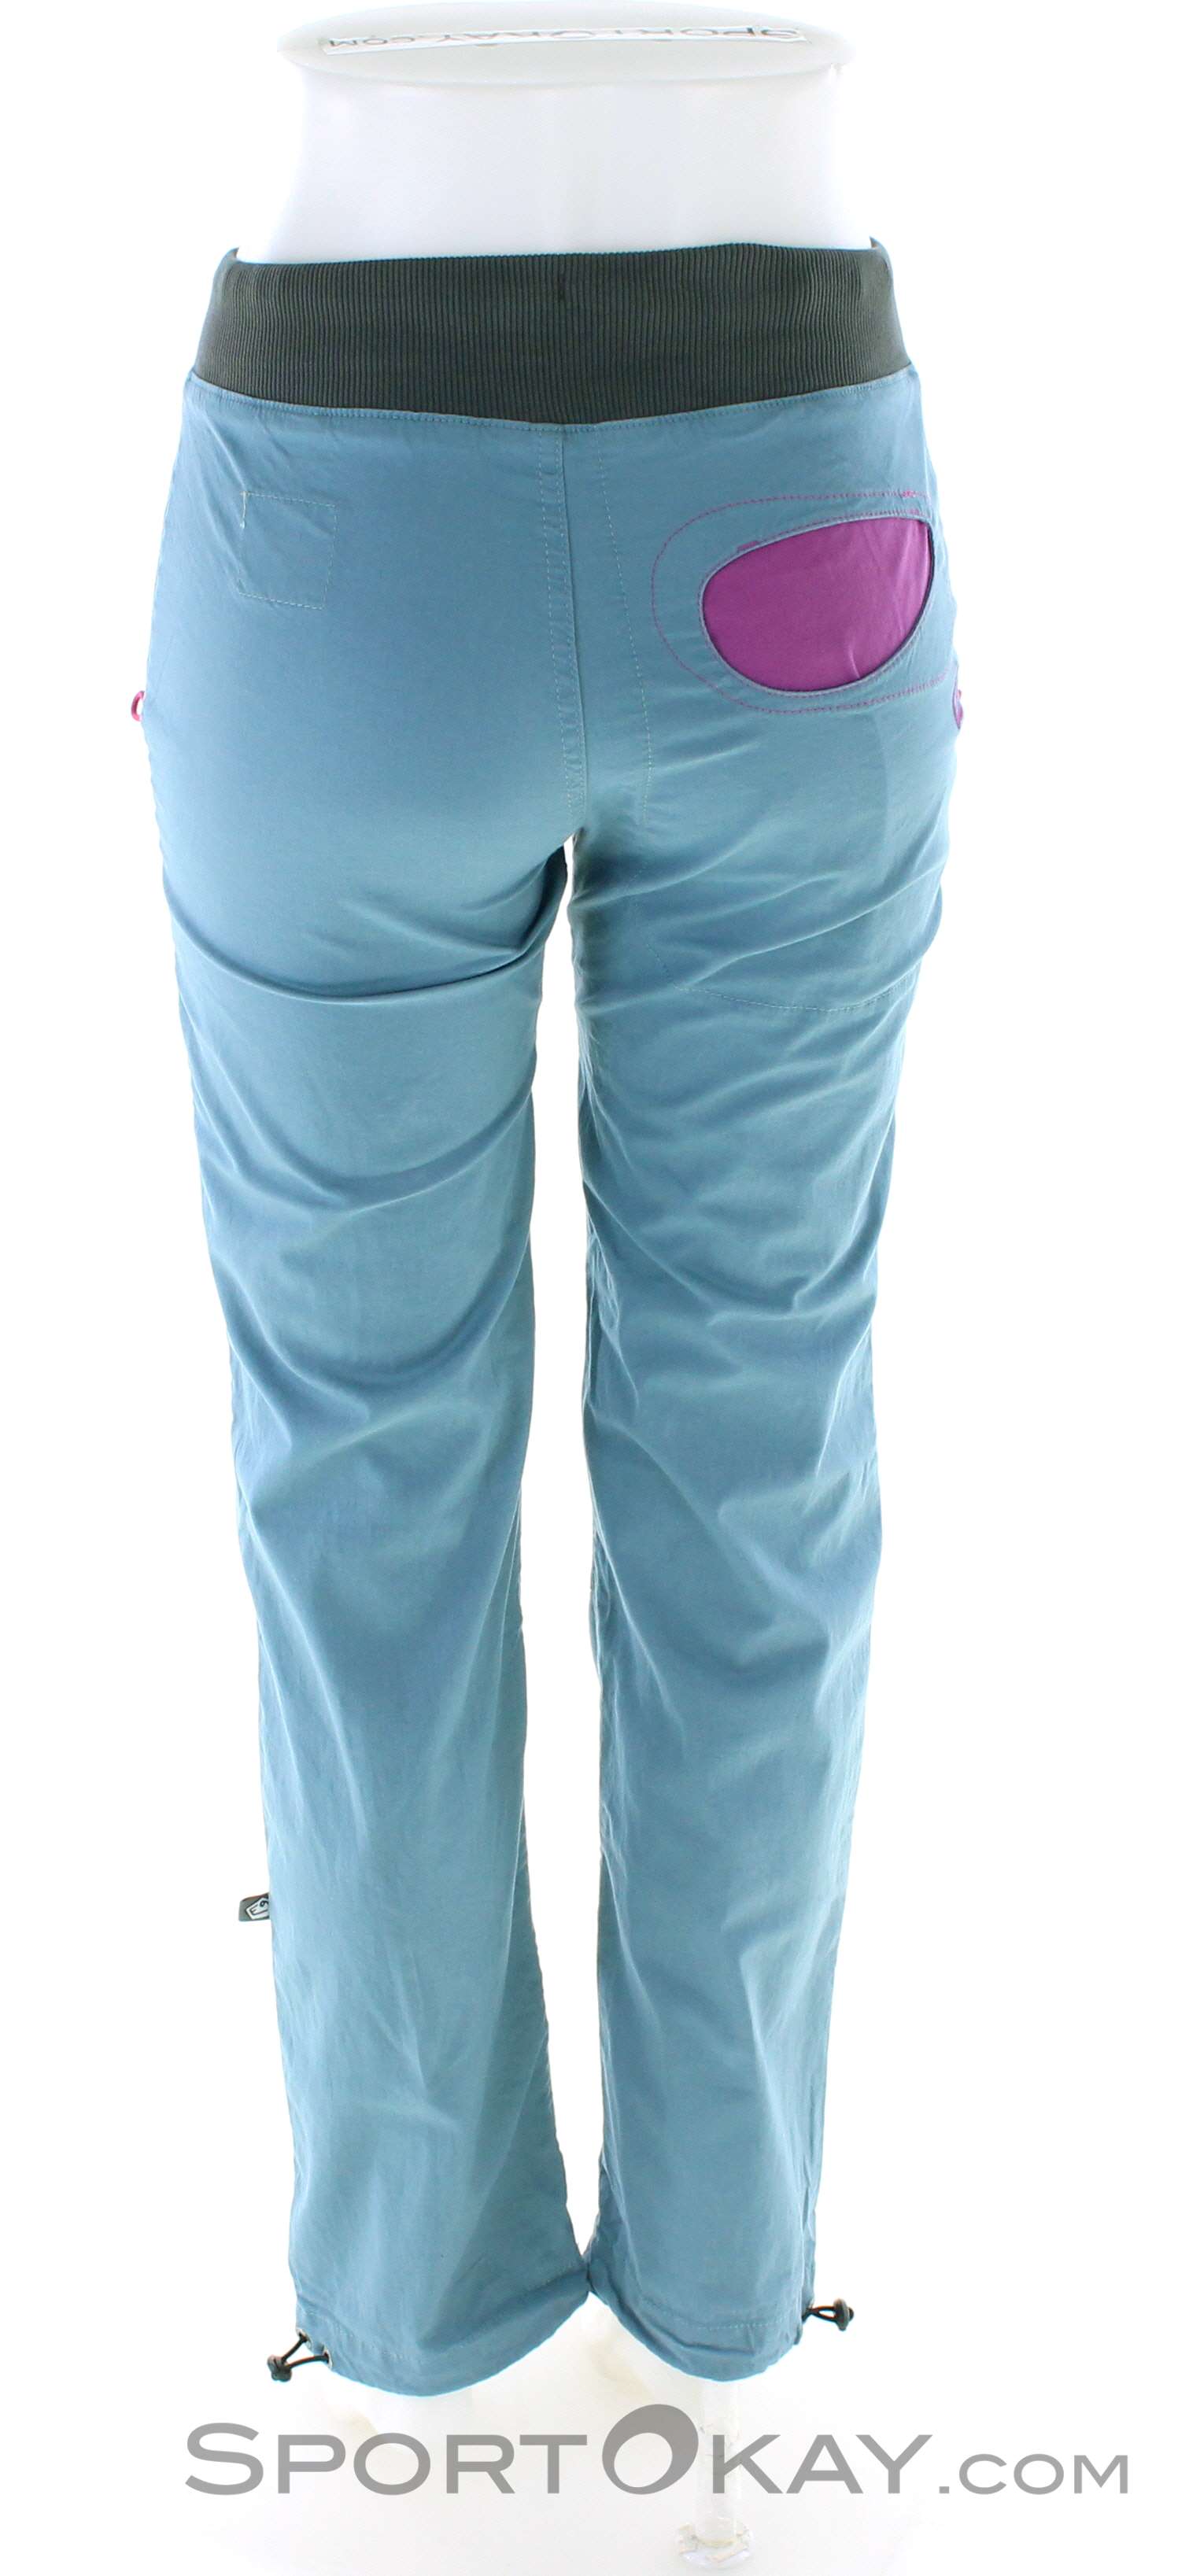 E9 Pantaloni da Arrampicata Donna - Onda Story - Slate - BIKE24